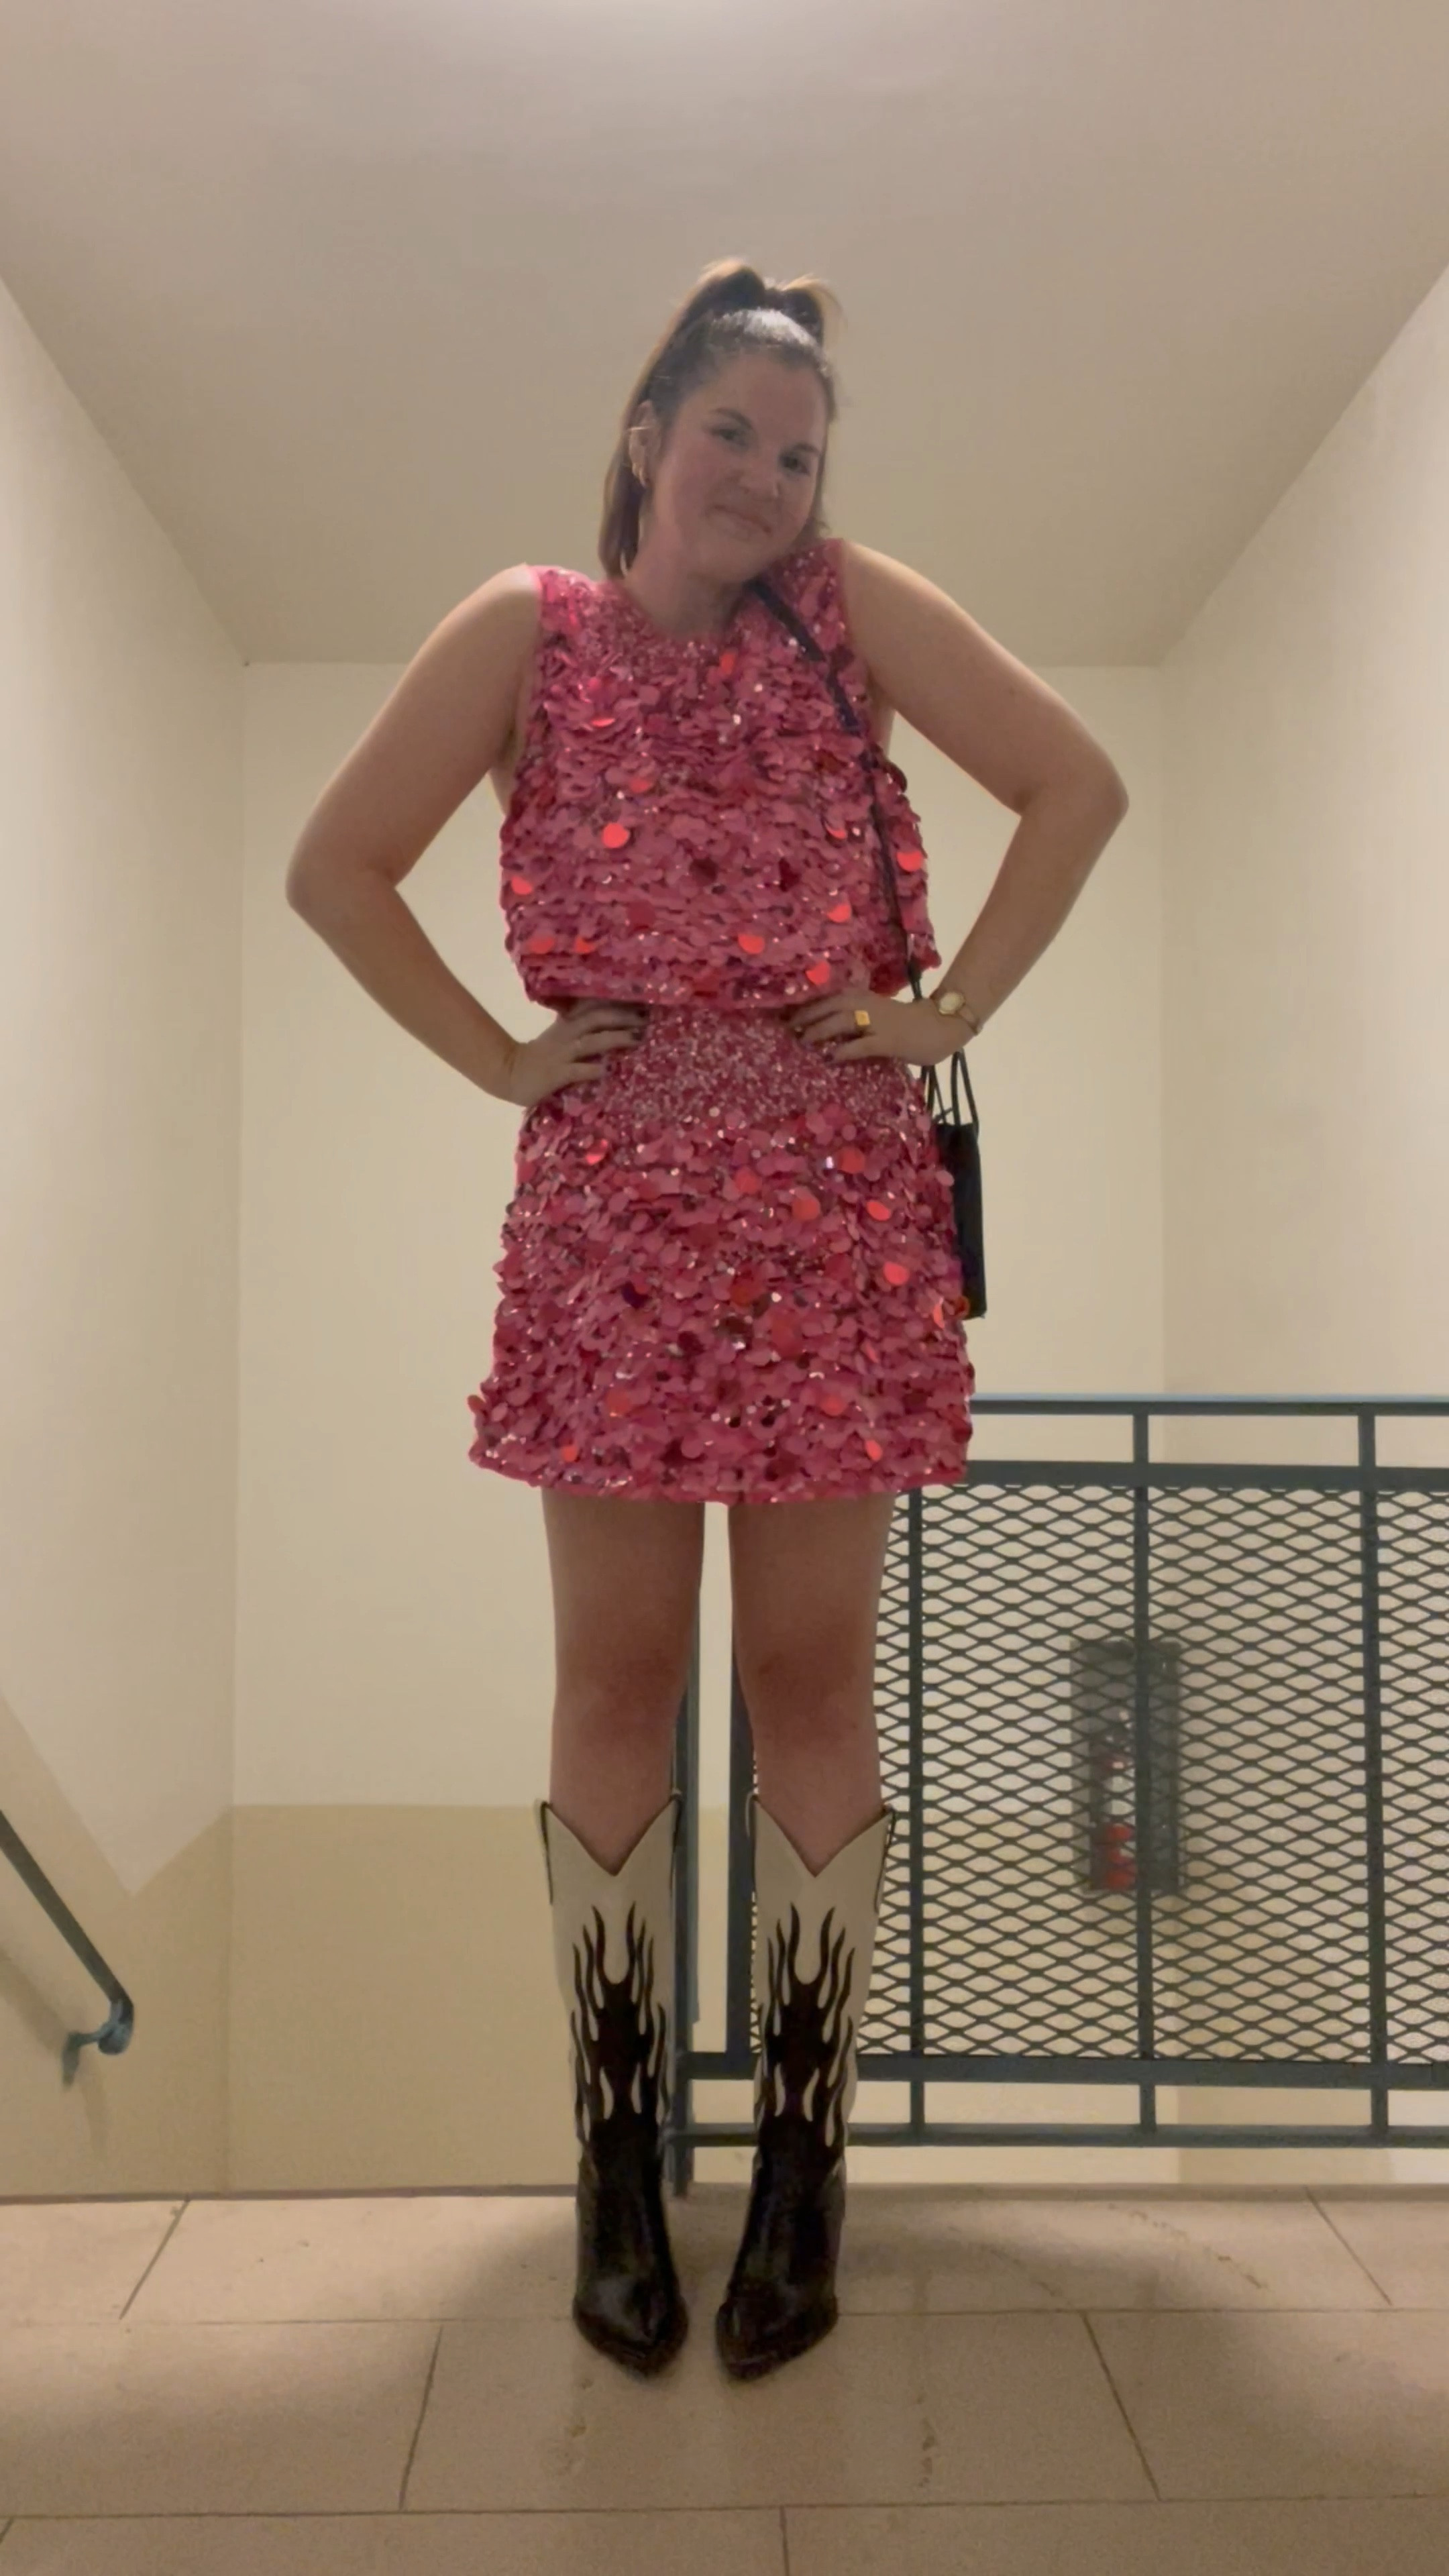 Cherie Sequin Mini Skirt